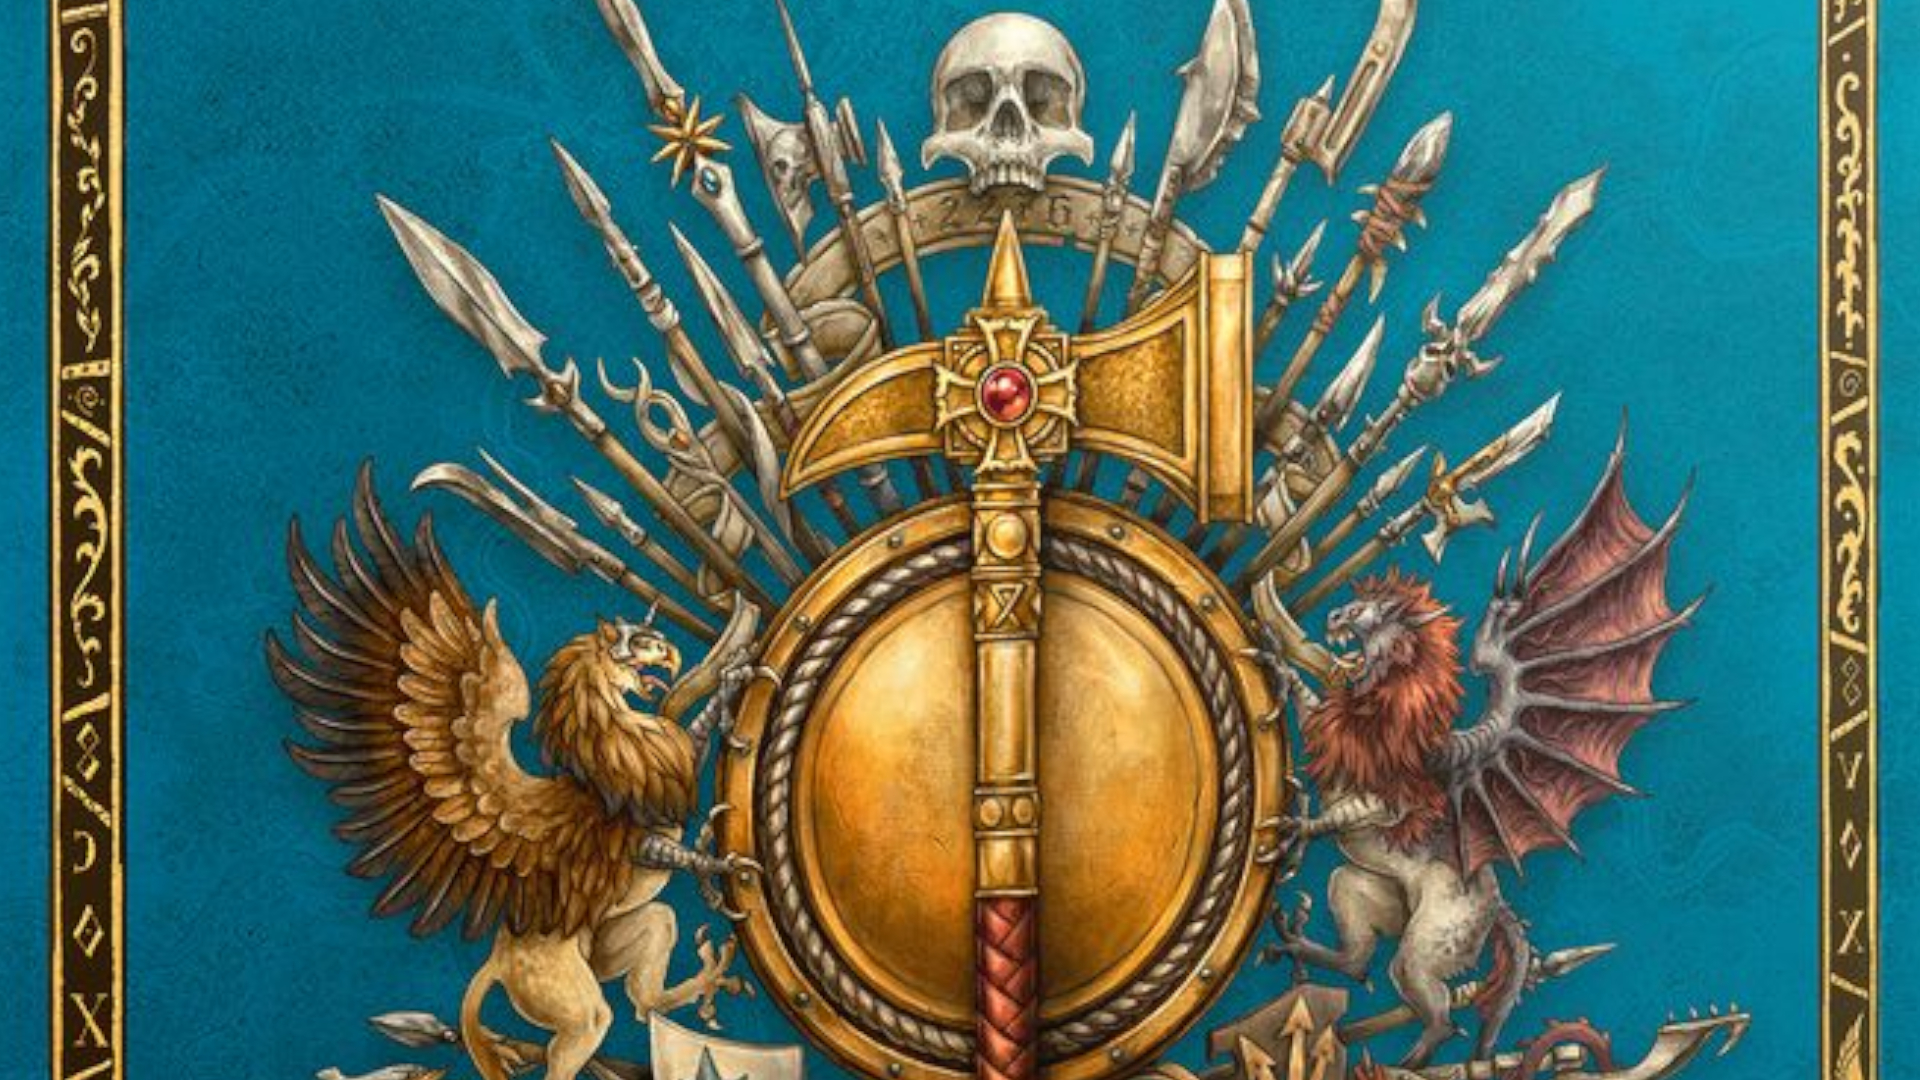 Zlaté válečné kladivo na štítu lemovaném kopími, lebkami a heraldikou ze hry Warhammer: Starý svět.